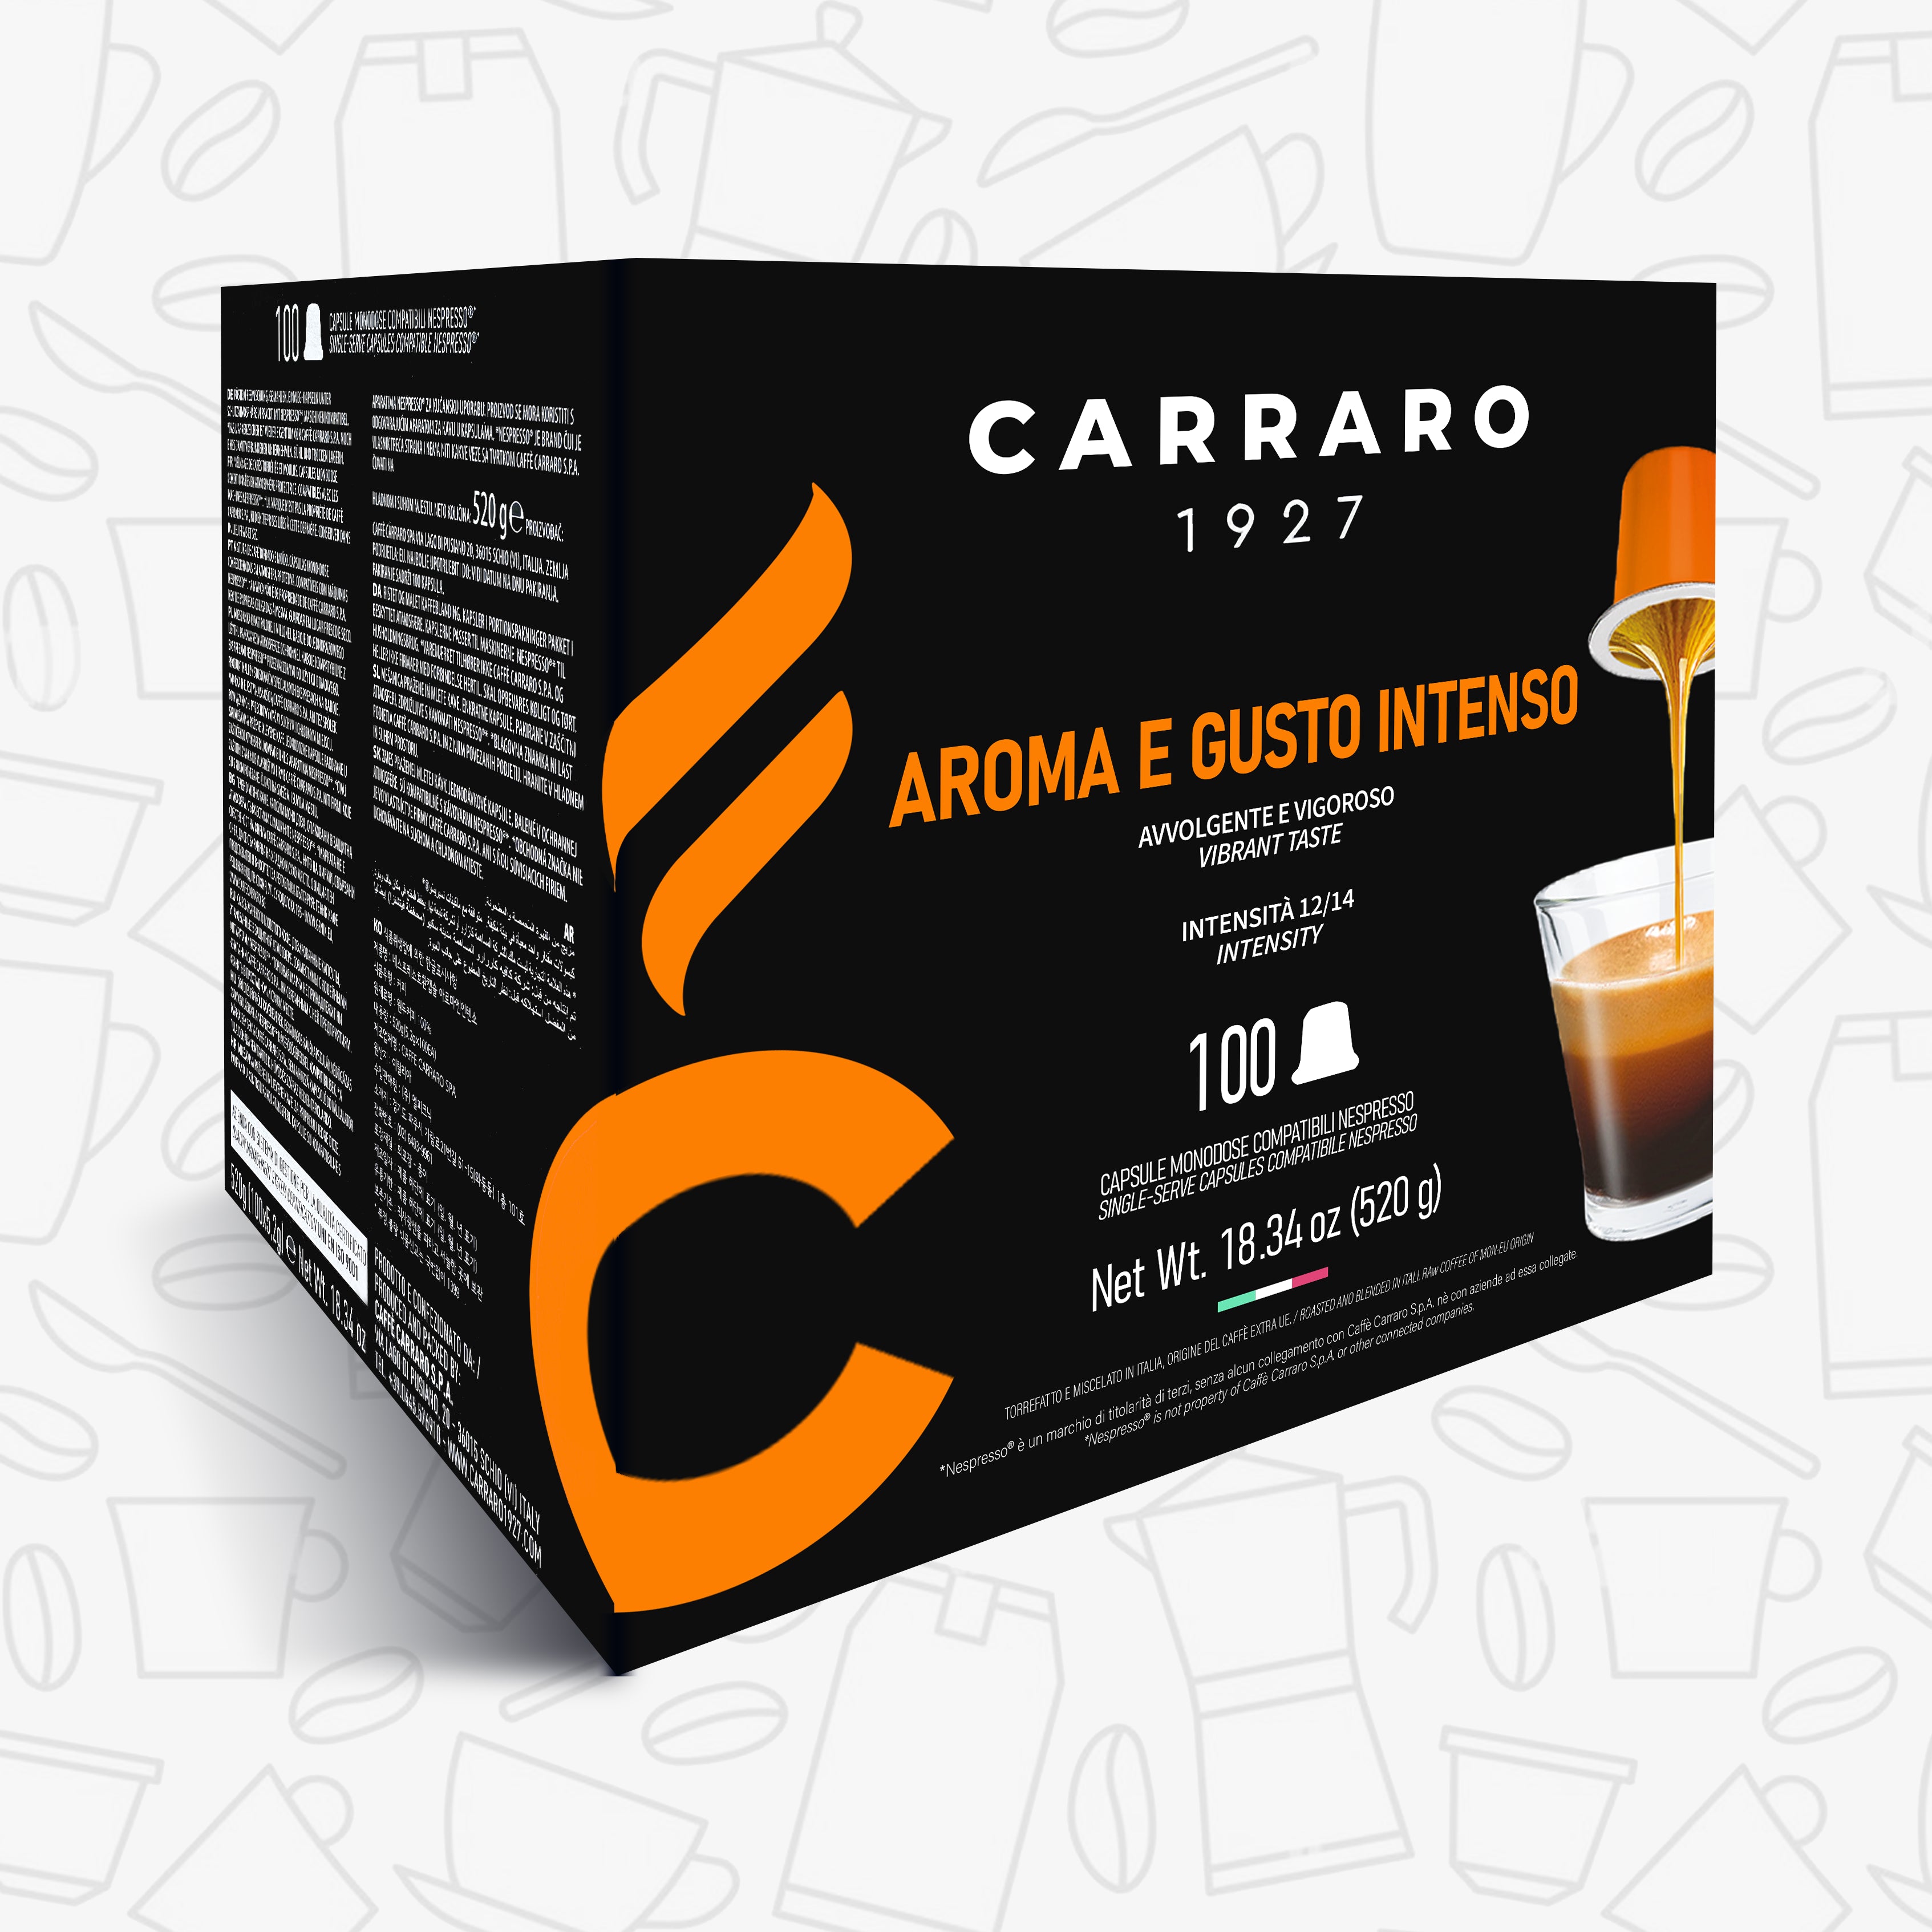 Carraro AROMA E GUSTO INTENSO 100 Coffee Capsules